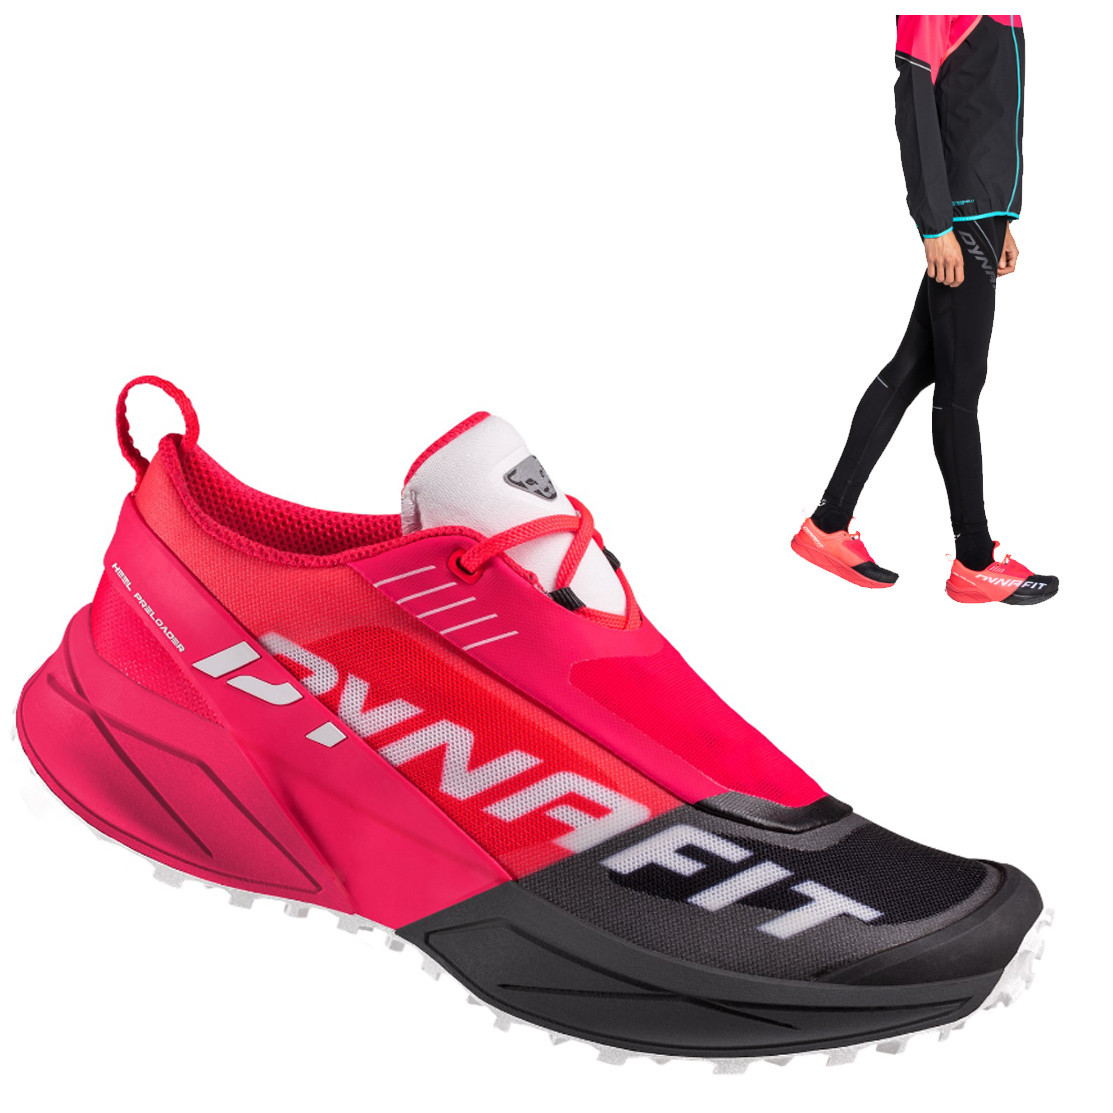 DYNAFIT - Ultra 100 Laufschuh Damen Trailrunning, schwarz pink von Burton, Gonso, Völkl, ...